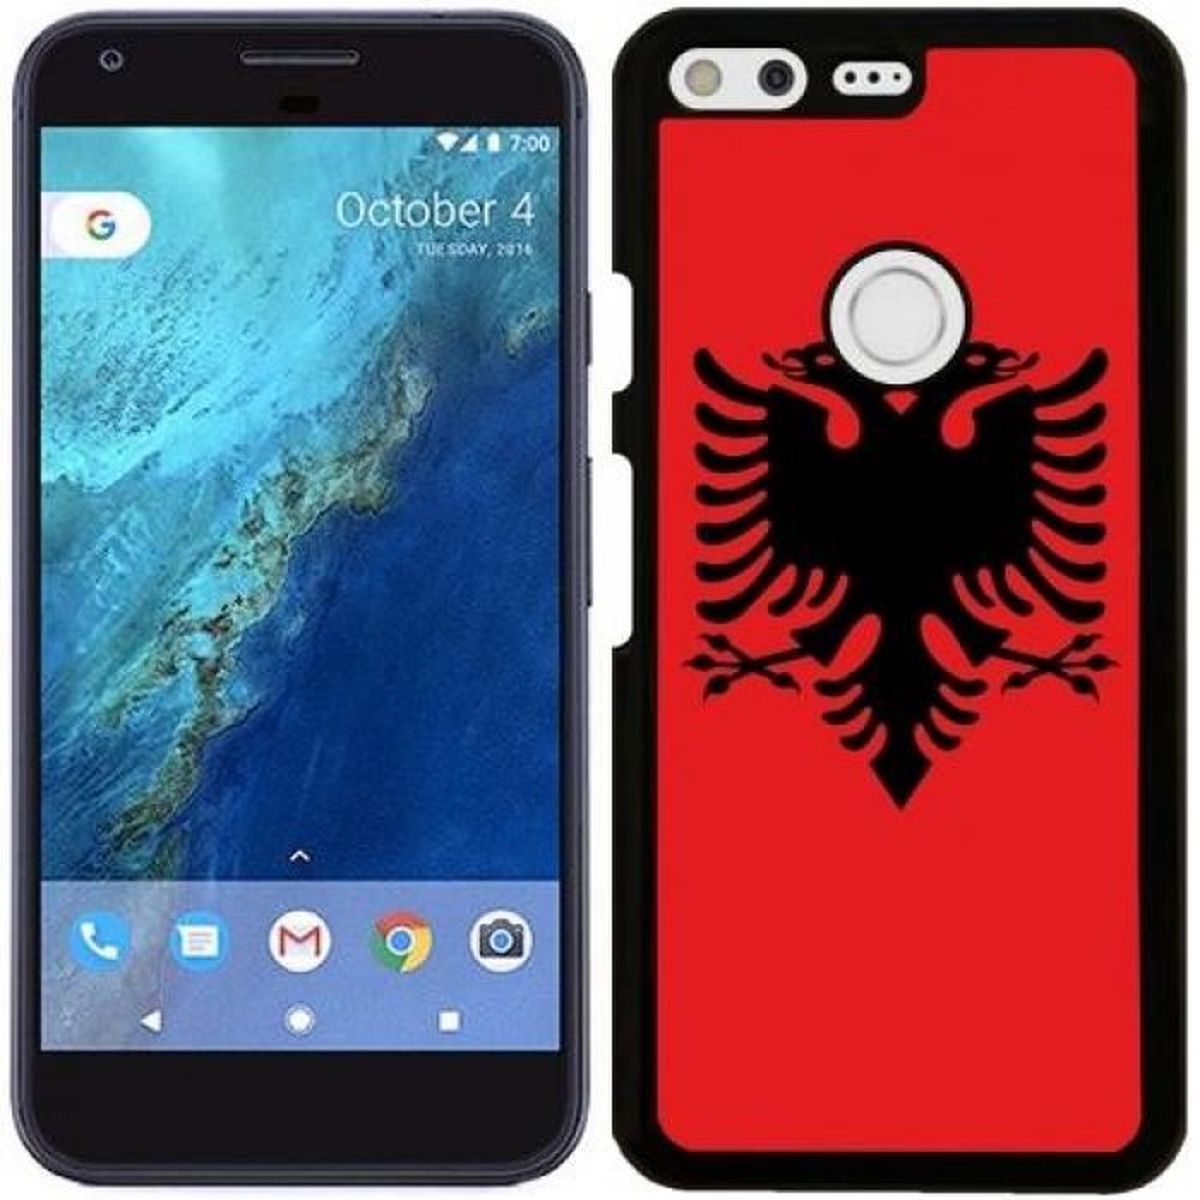 coque iphone xr albanie